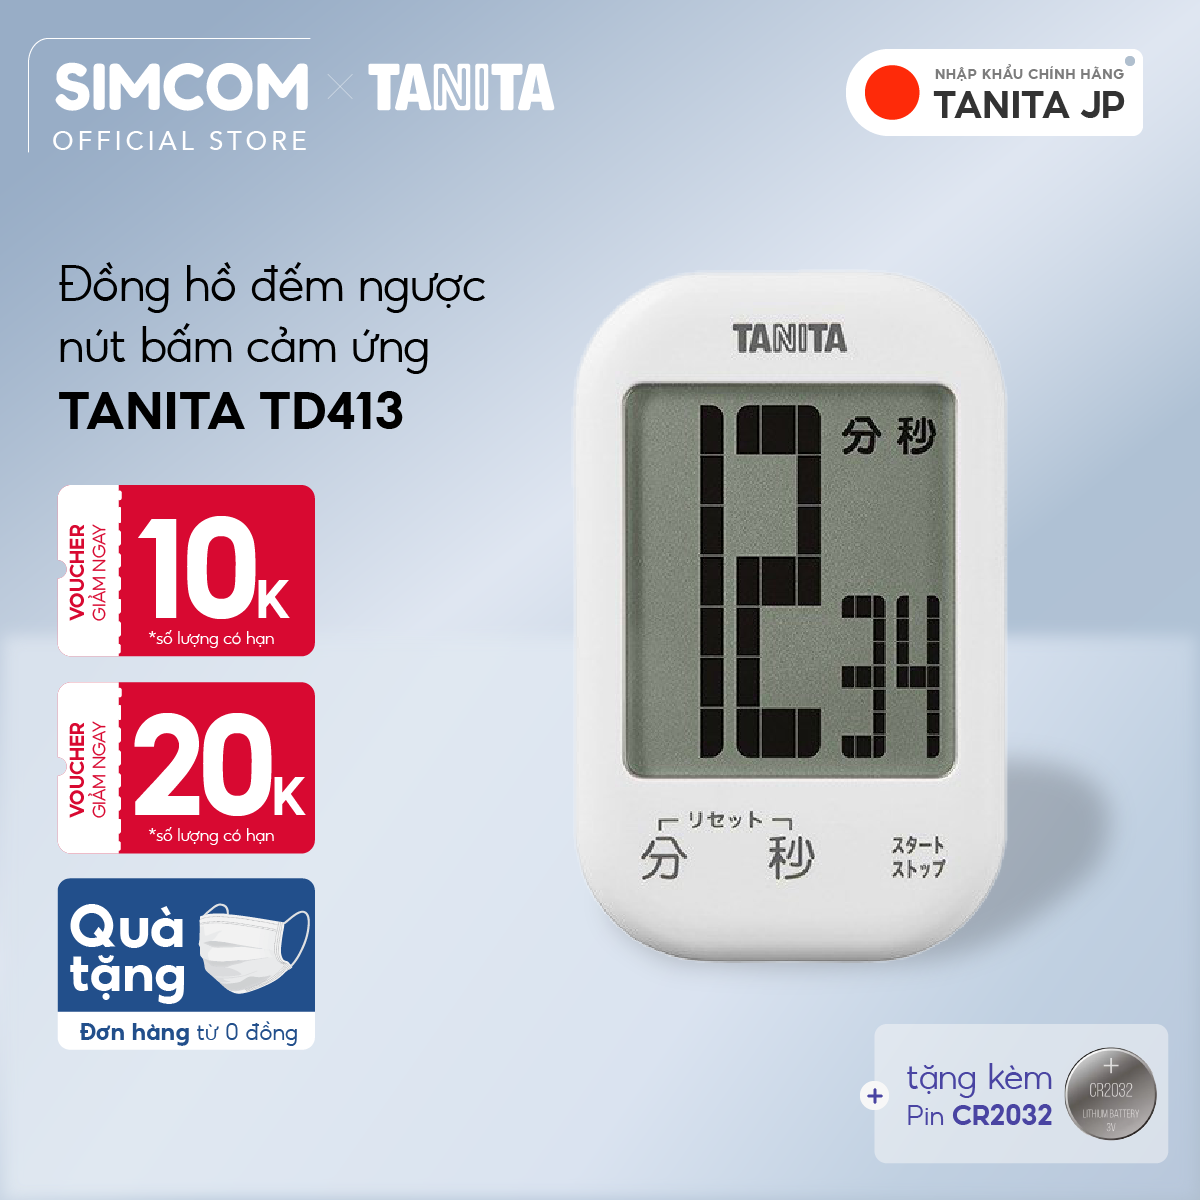 Đồng hồ đếm ngược Tanita TD413 Nhật Bản,Đồng hồ mini đếm ngược bấm giờ,Đồng hồ mini bấm giờ,Đồng hồ hẹn giờ,Đồng hồ bếp,Đồng hồ đếm ngược thời gian,đồng hồ bấm giờ đếm ngược,Đồng hồ điện tử đếm giờ,Đồng hồ điện tử đếm ngược